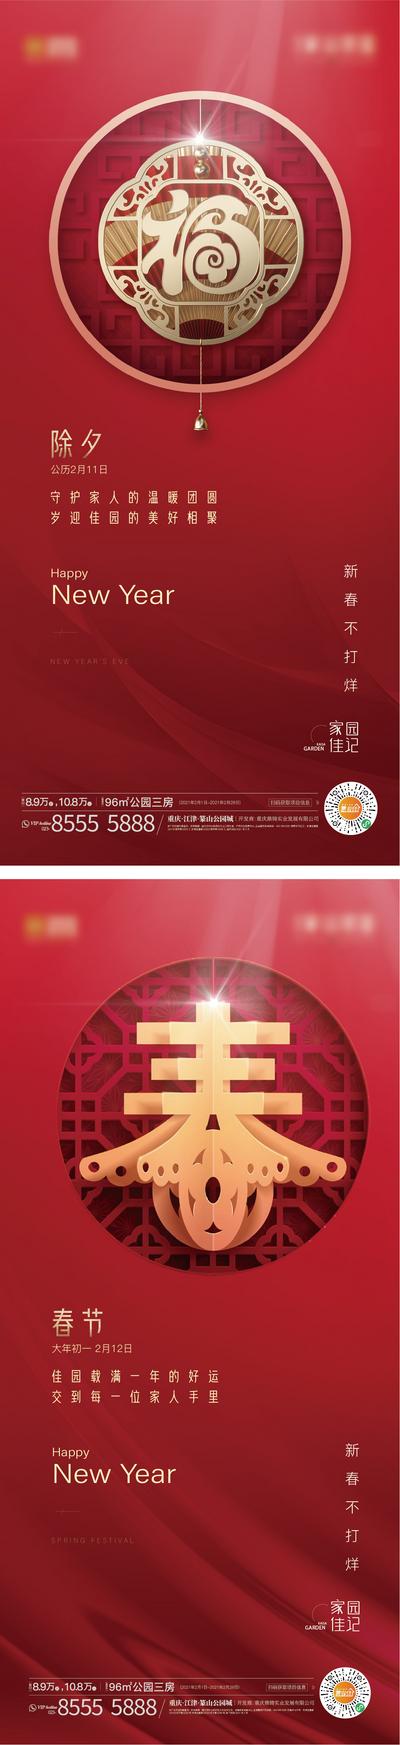 南门网 海报 房地产 中国传统节日 春节 除夕 系列